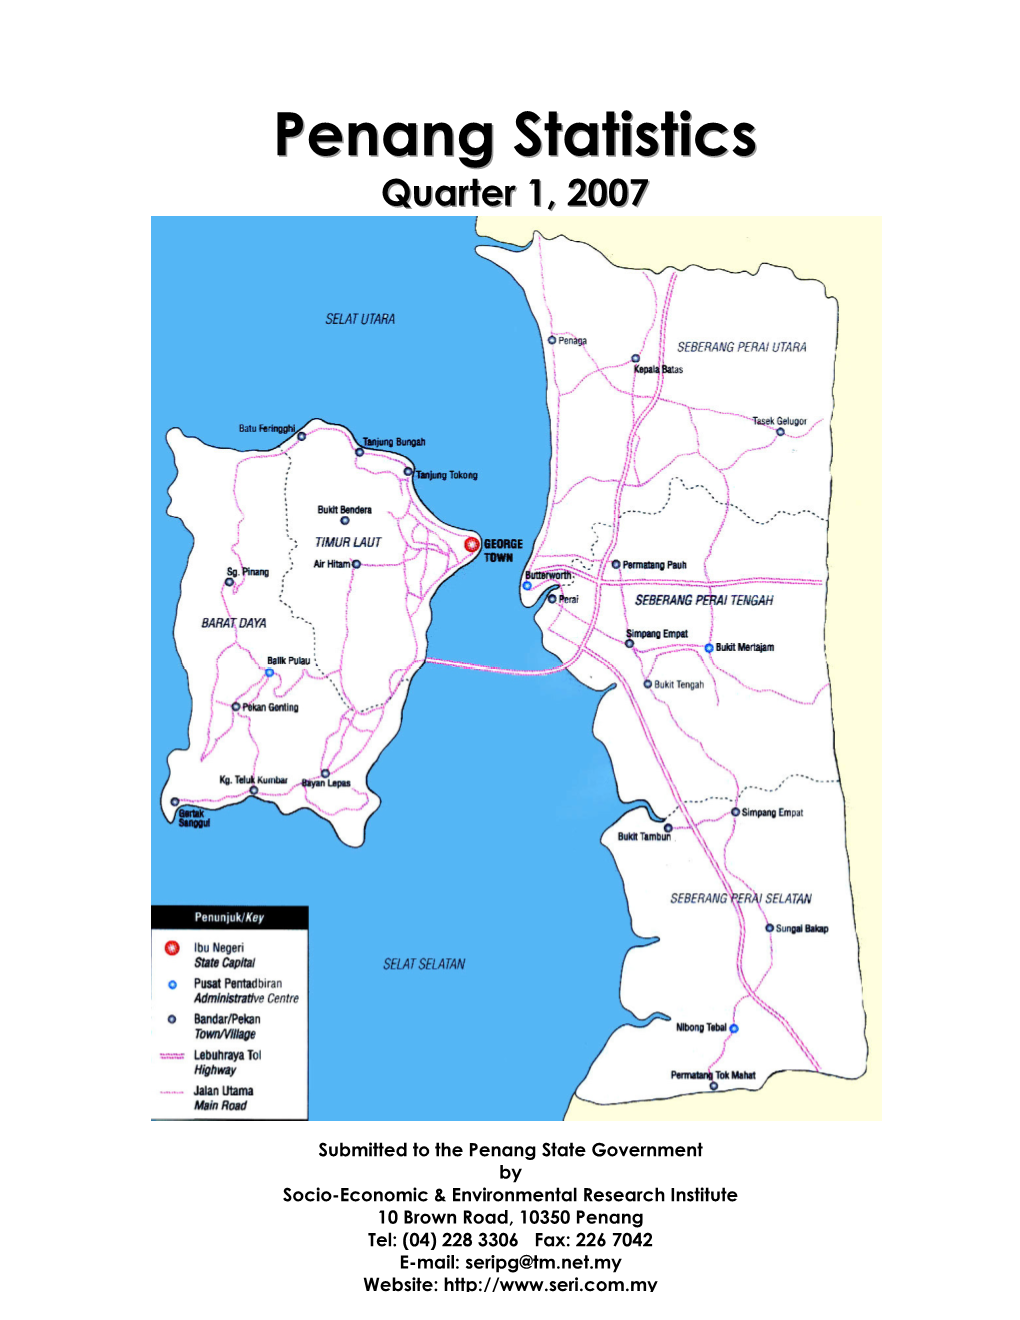 PENANG STATISTICS (Quarter 1, 2007)